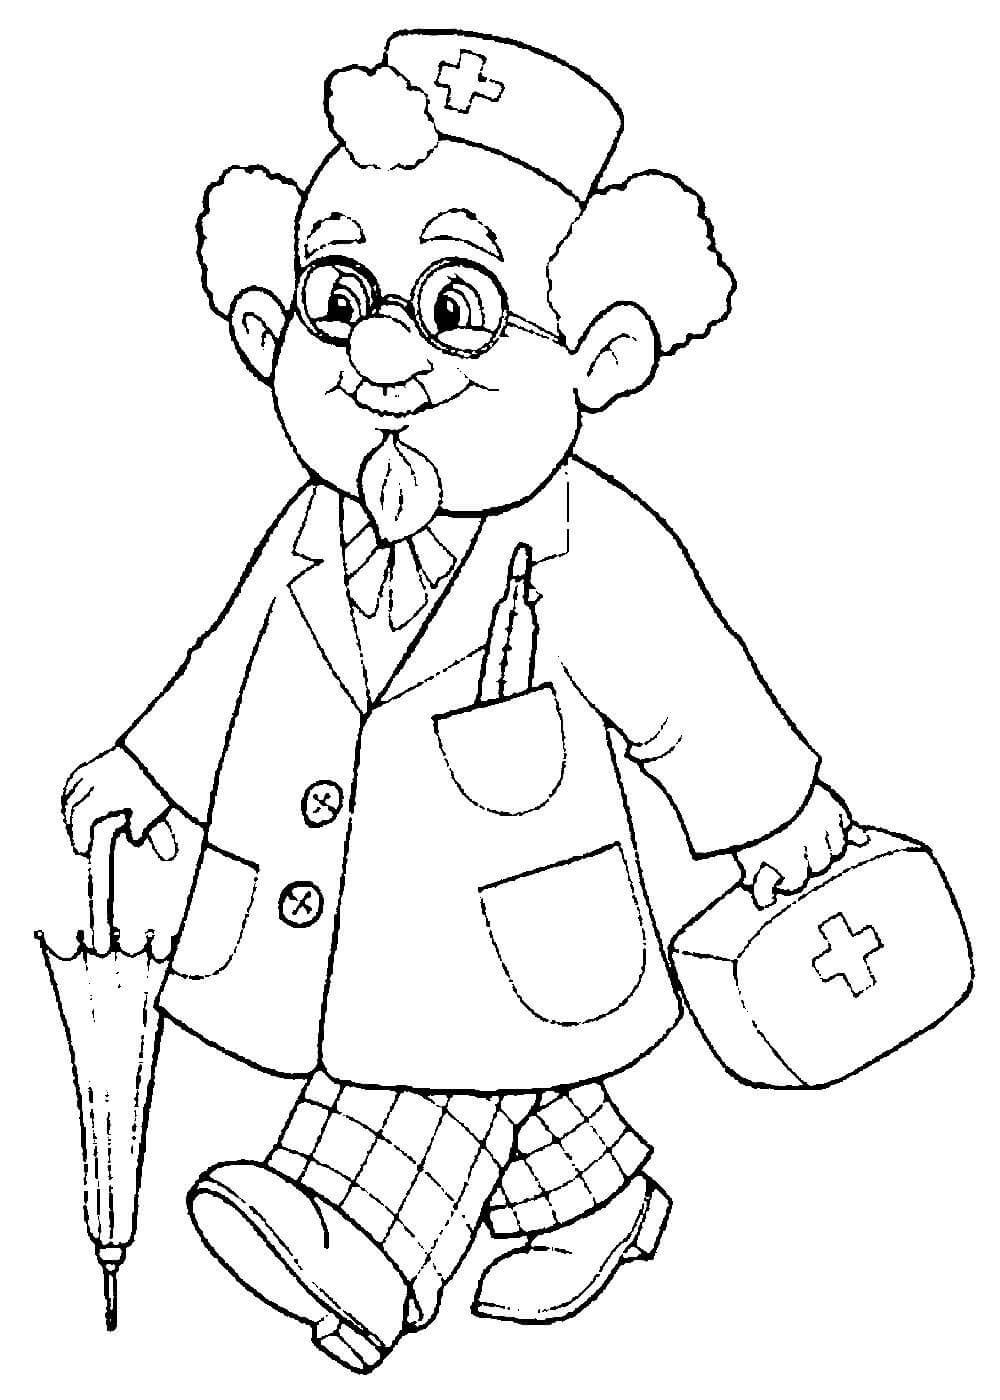 Trickortreat medic карикатура для раскраски маленькая девочка, одетая как доктор